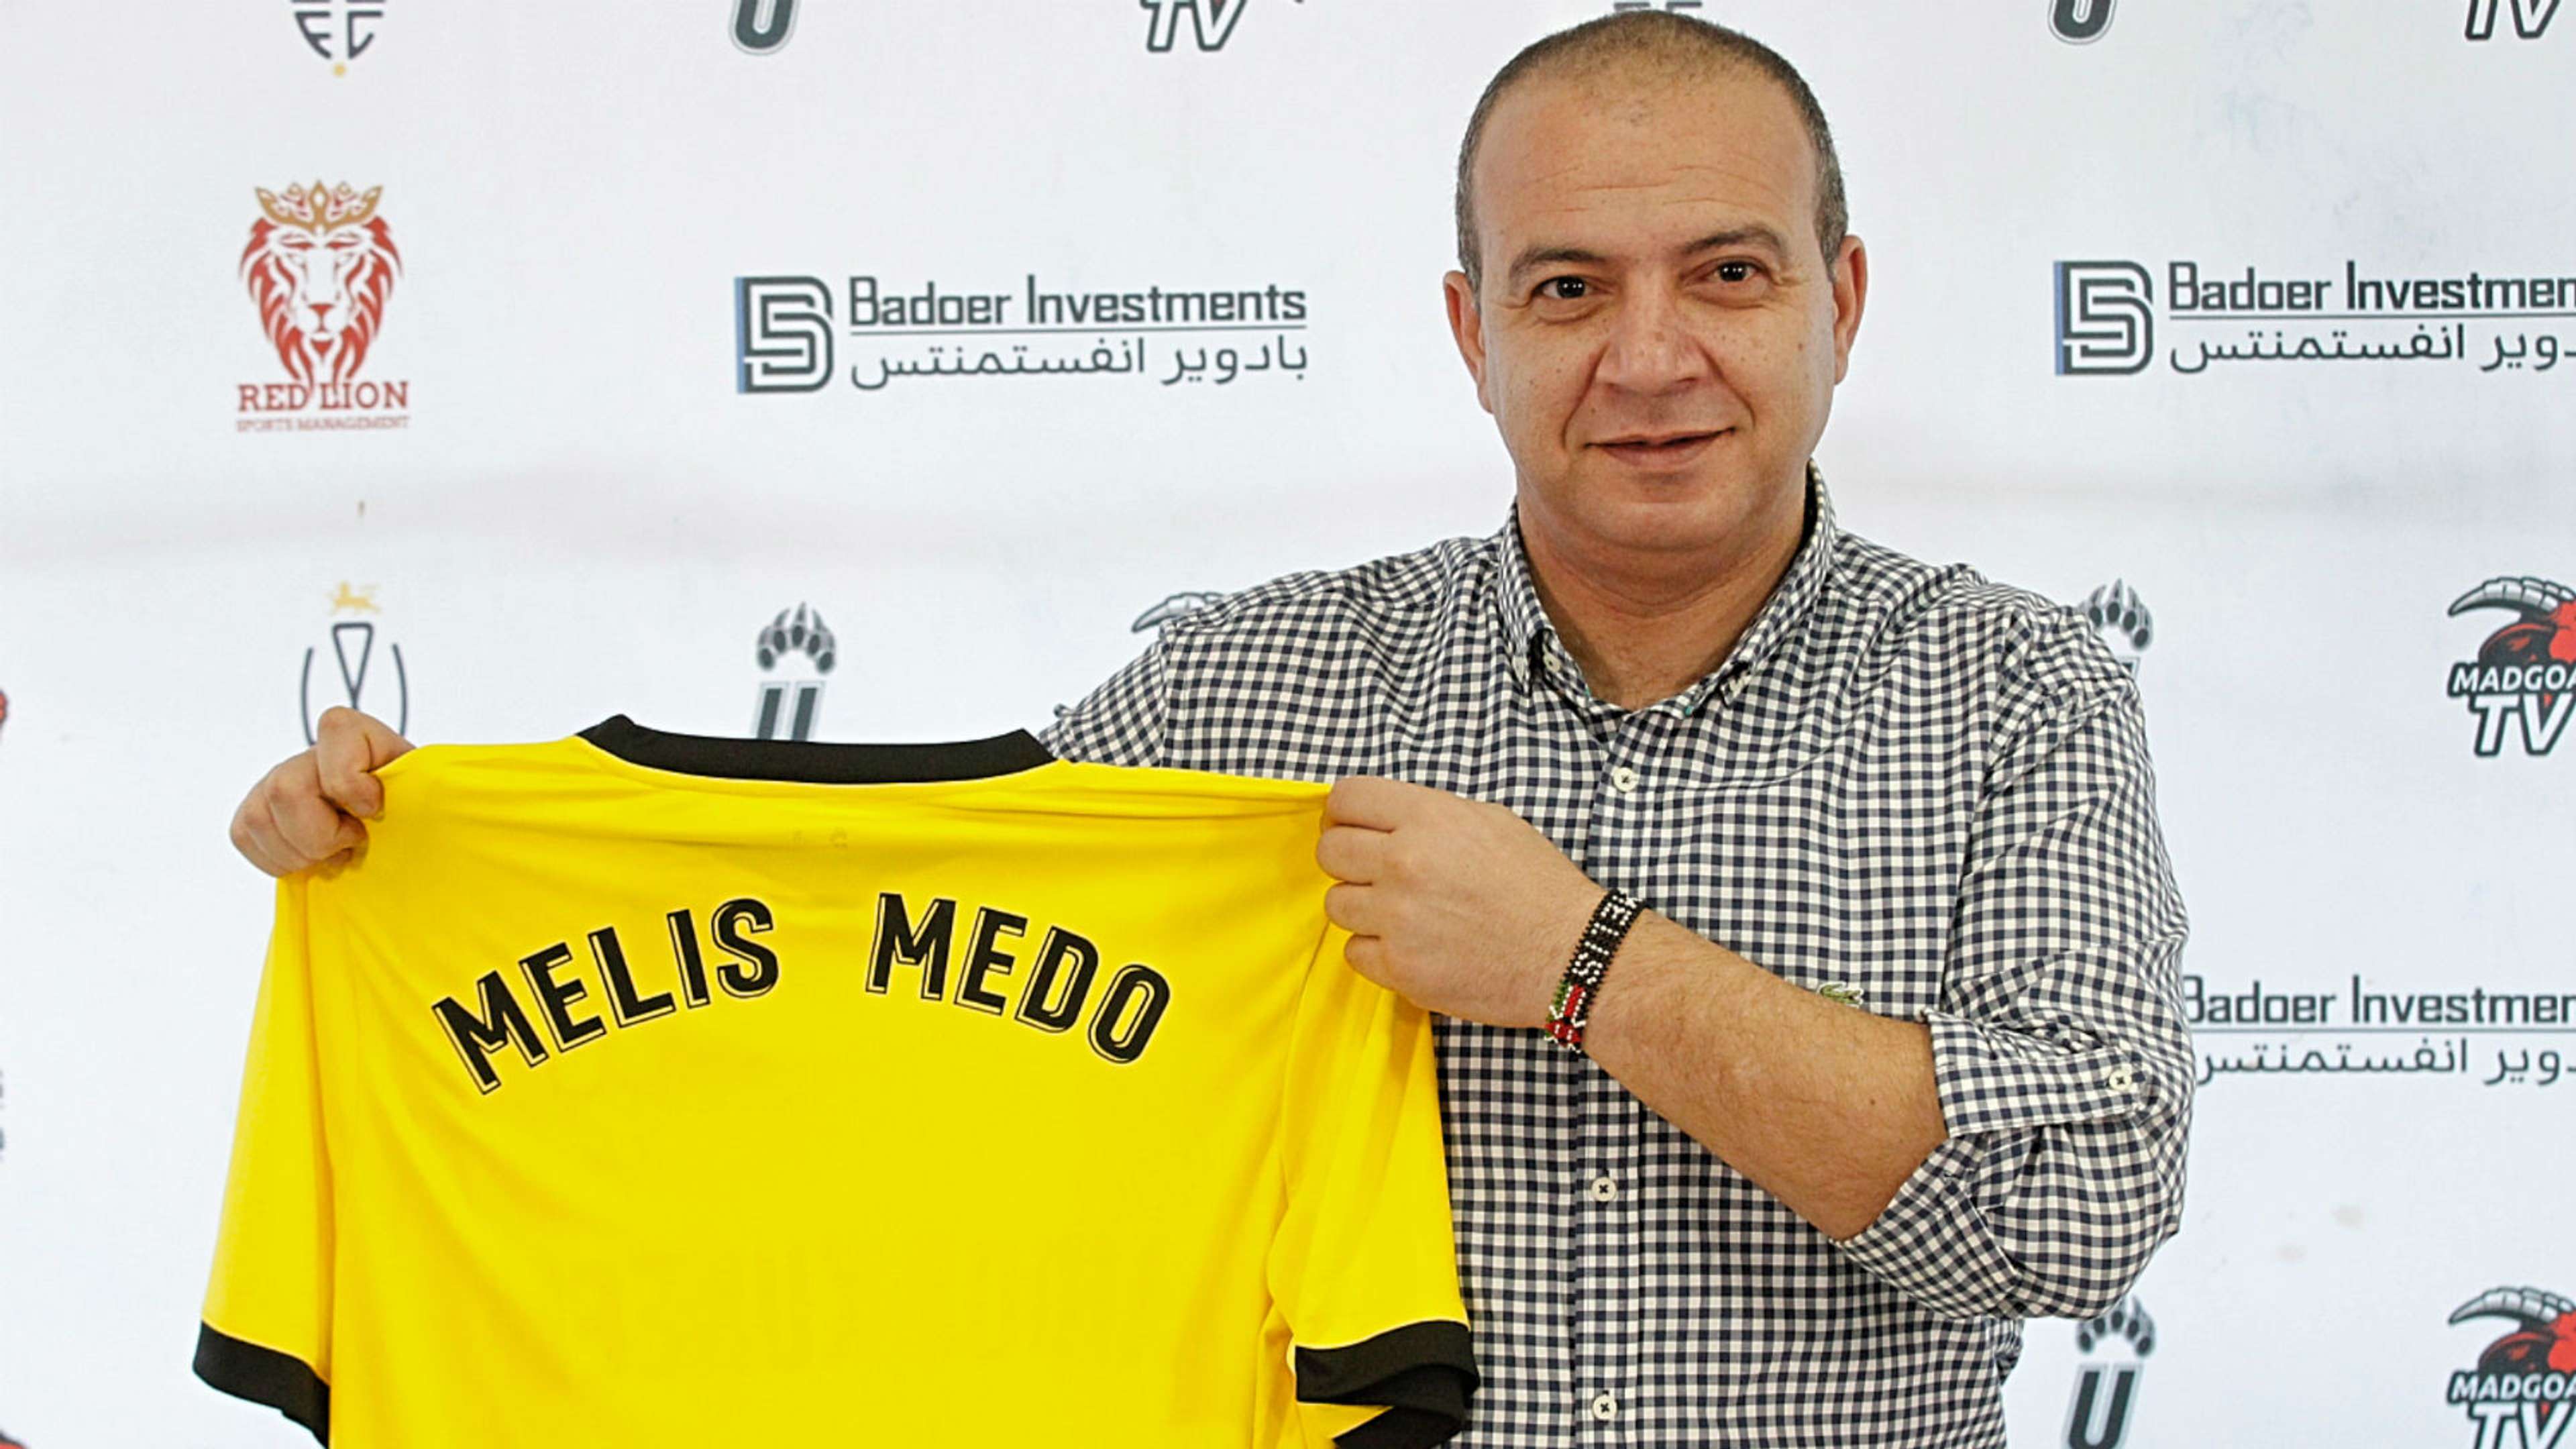 Wazito FC coach Melis Medo.